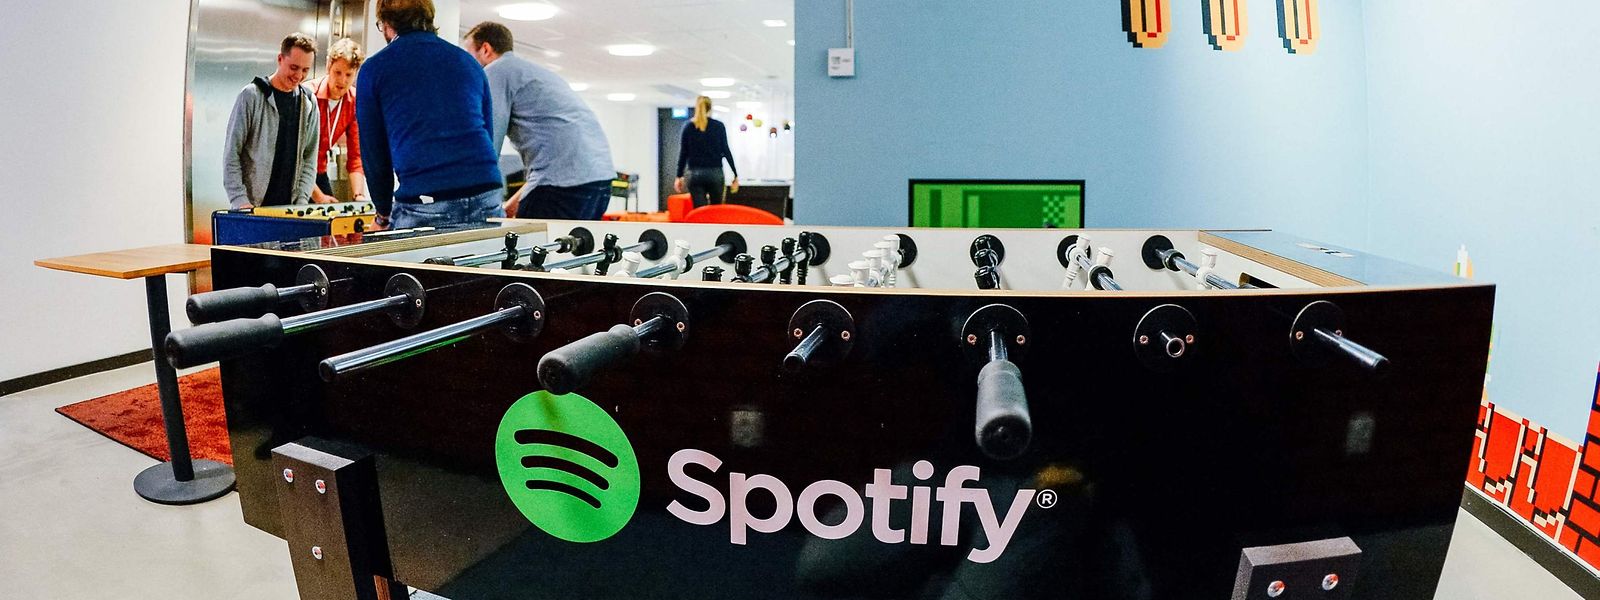 Si Spotify a été ponctuellement rentable, le groupe né à Stockholm accuse régulièrement des pertes depuis plusieurs années